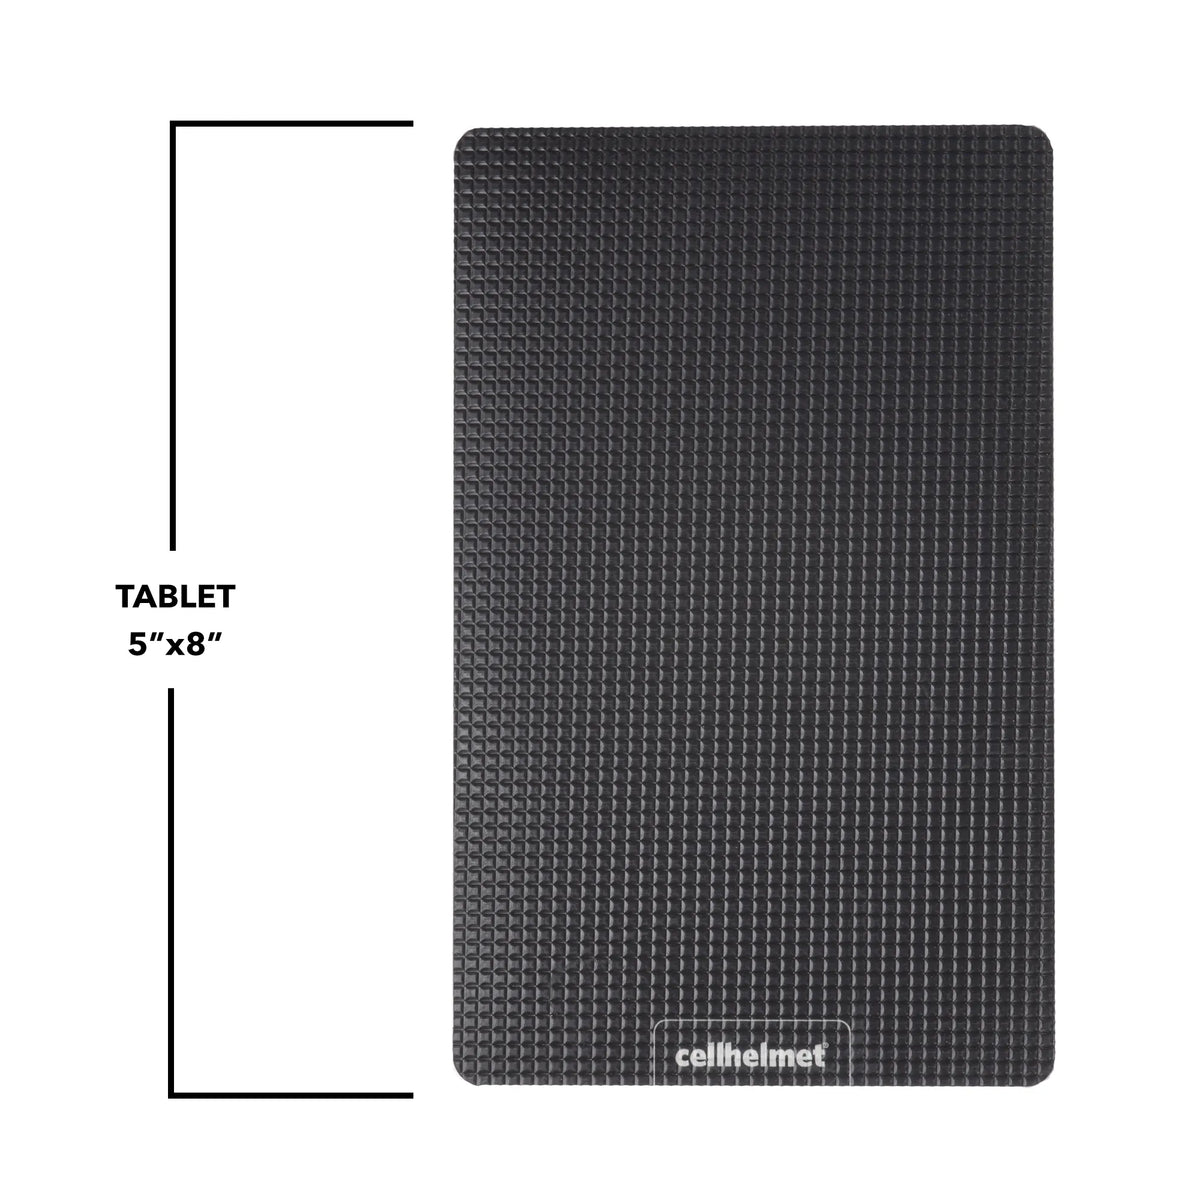 tackbacks Black Tablet -  -  - cellhelmet